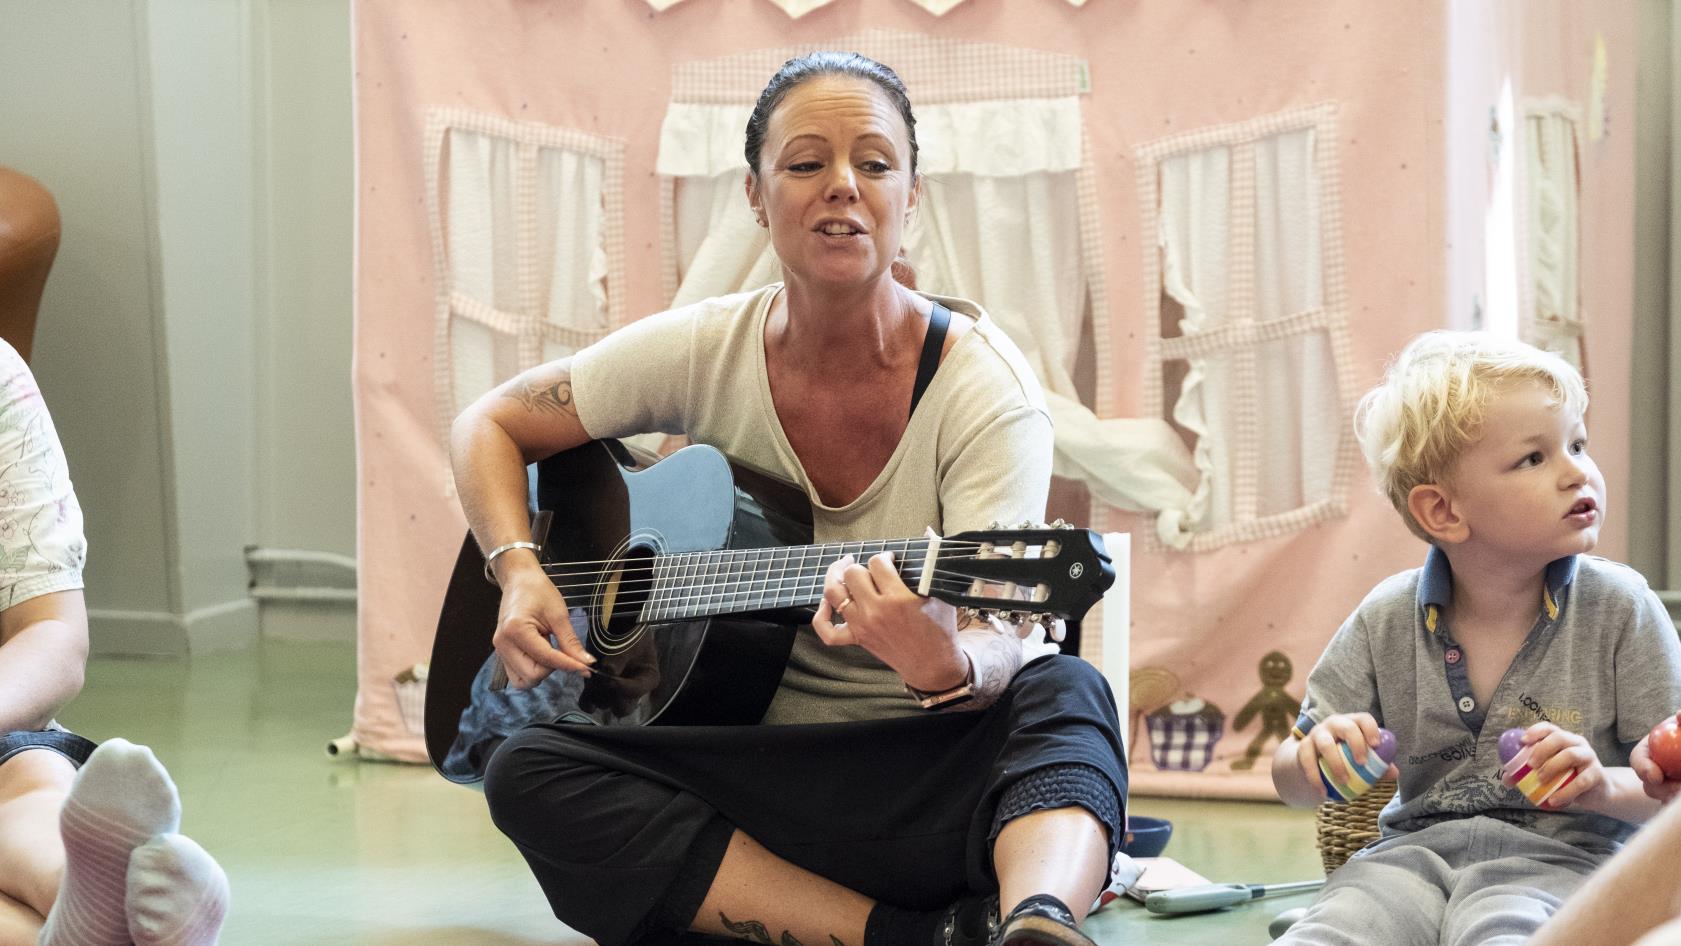 En kvinnlig ledare sitter i en ring på golvet med barn och deras föräldrar. Hon spelar gitarr och sjunger.